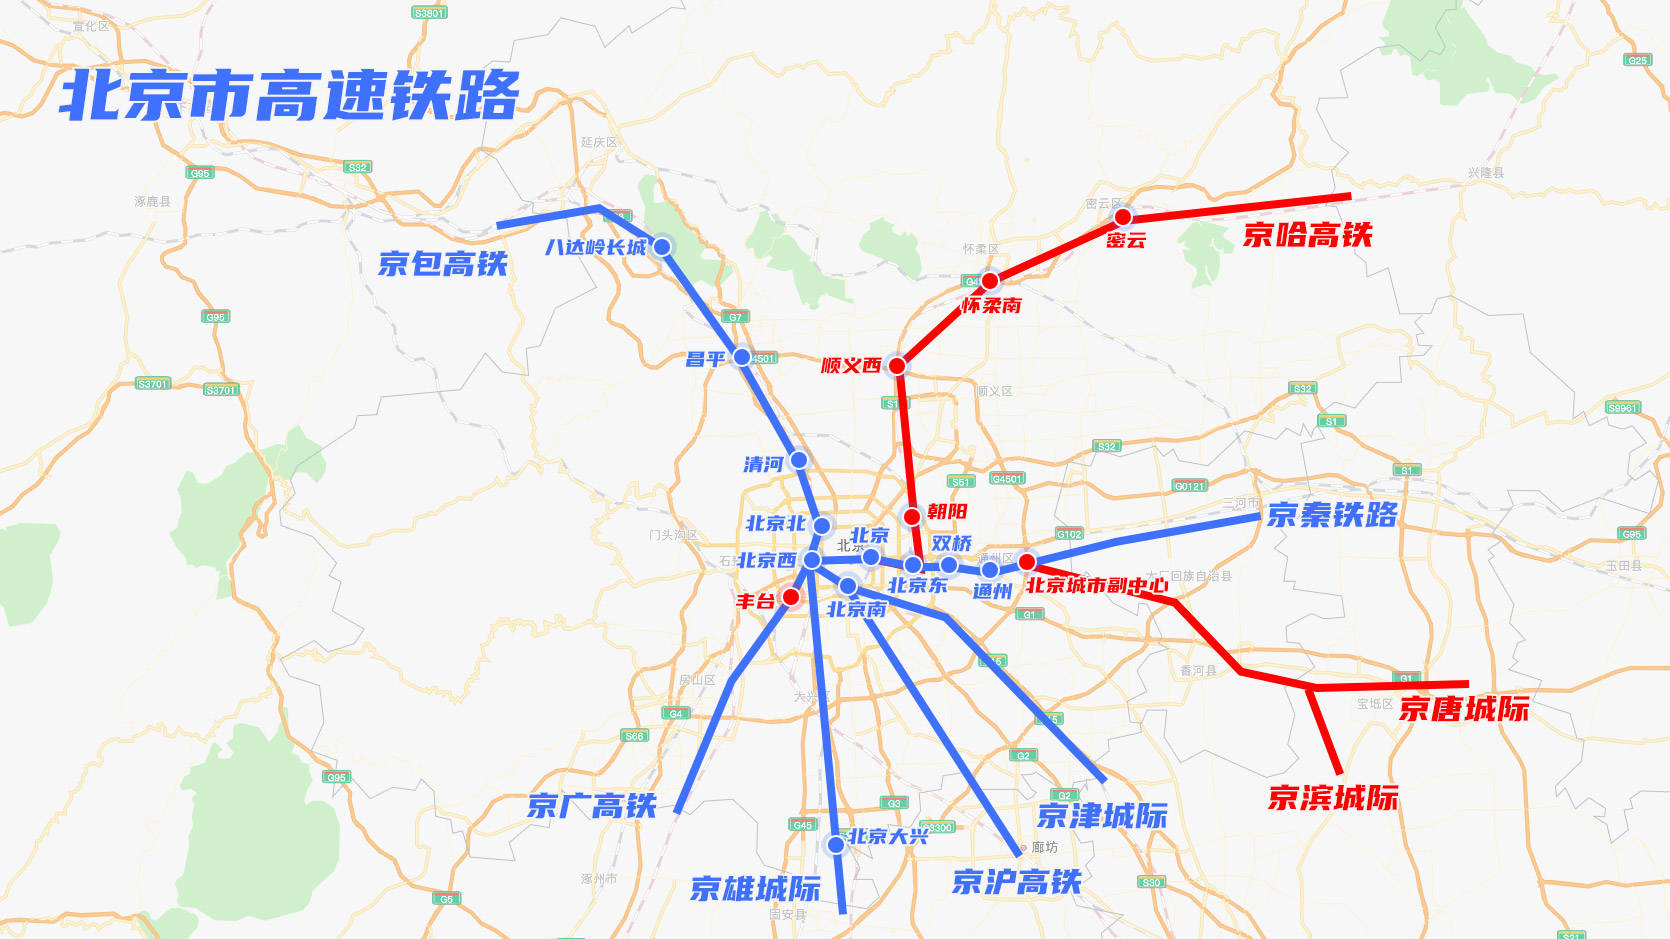 米乐:
中国综合国力的飞跃：从北京开车到崇礼至少得三四个小时